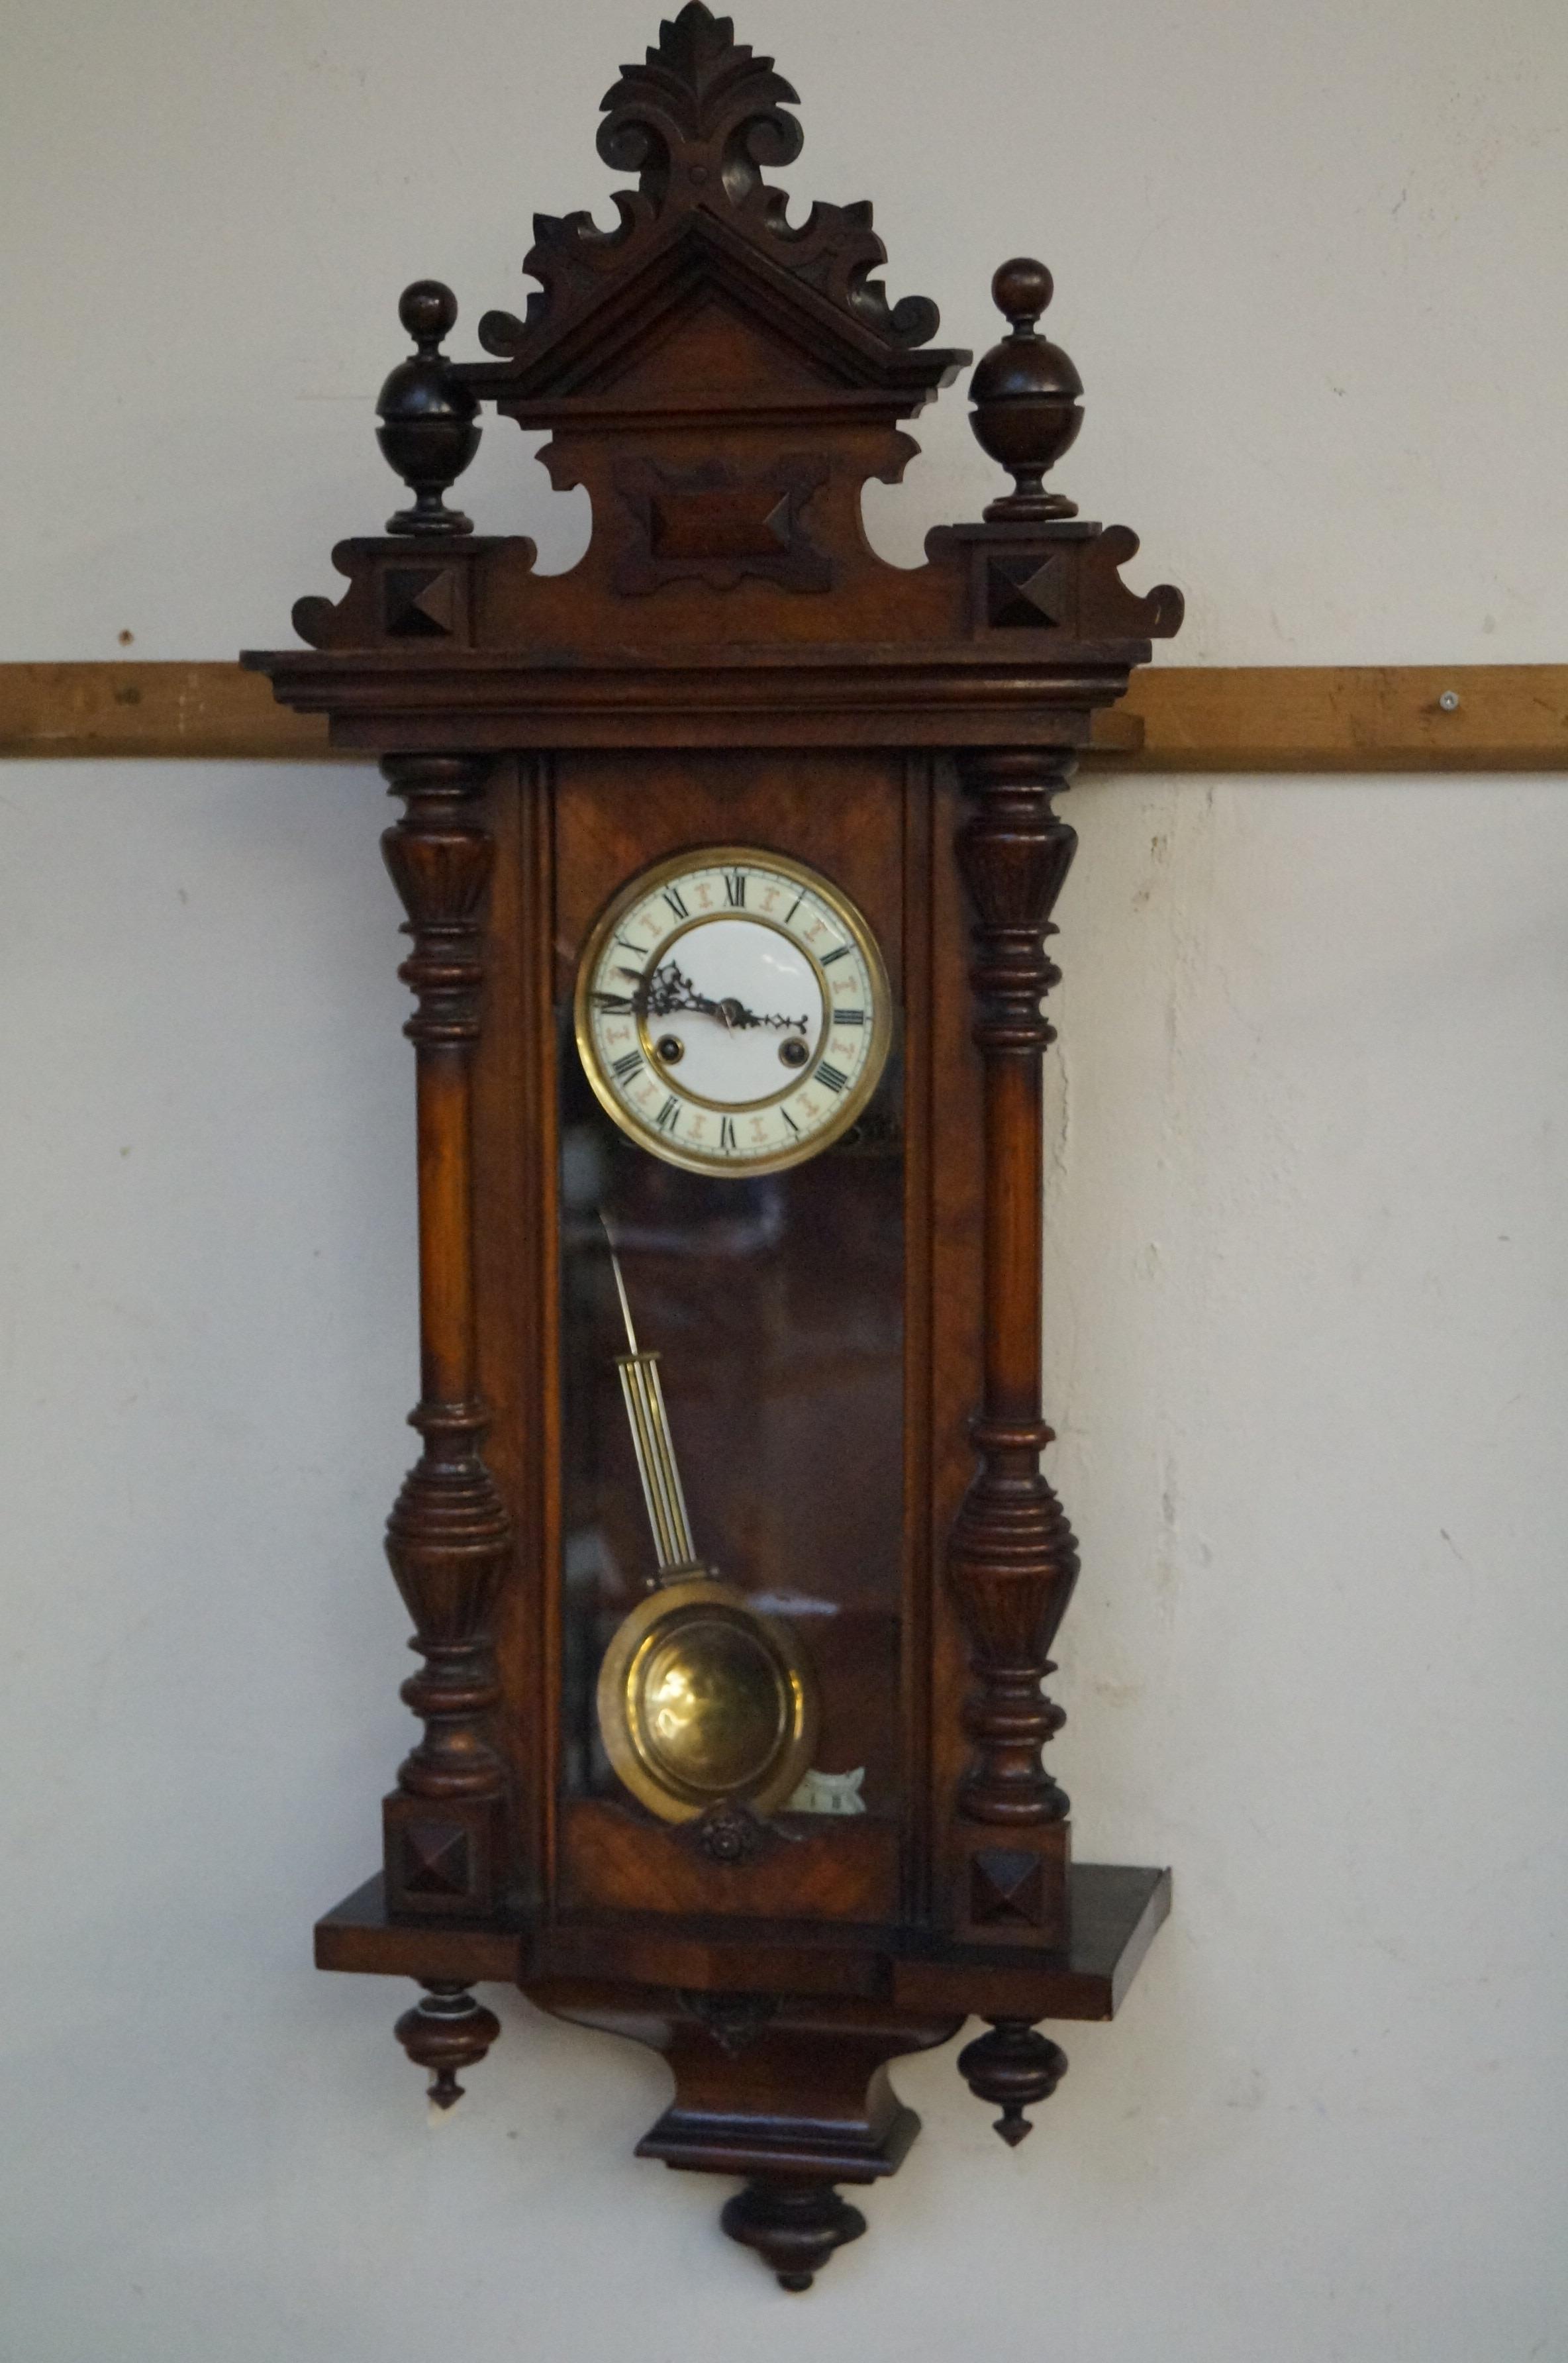 Early 20th century wall clock